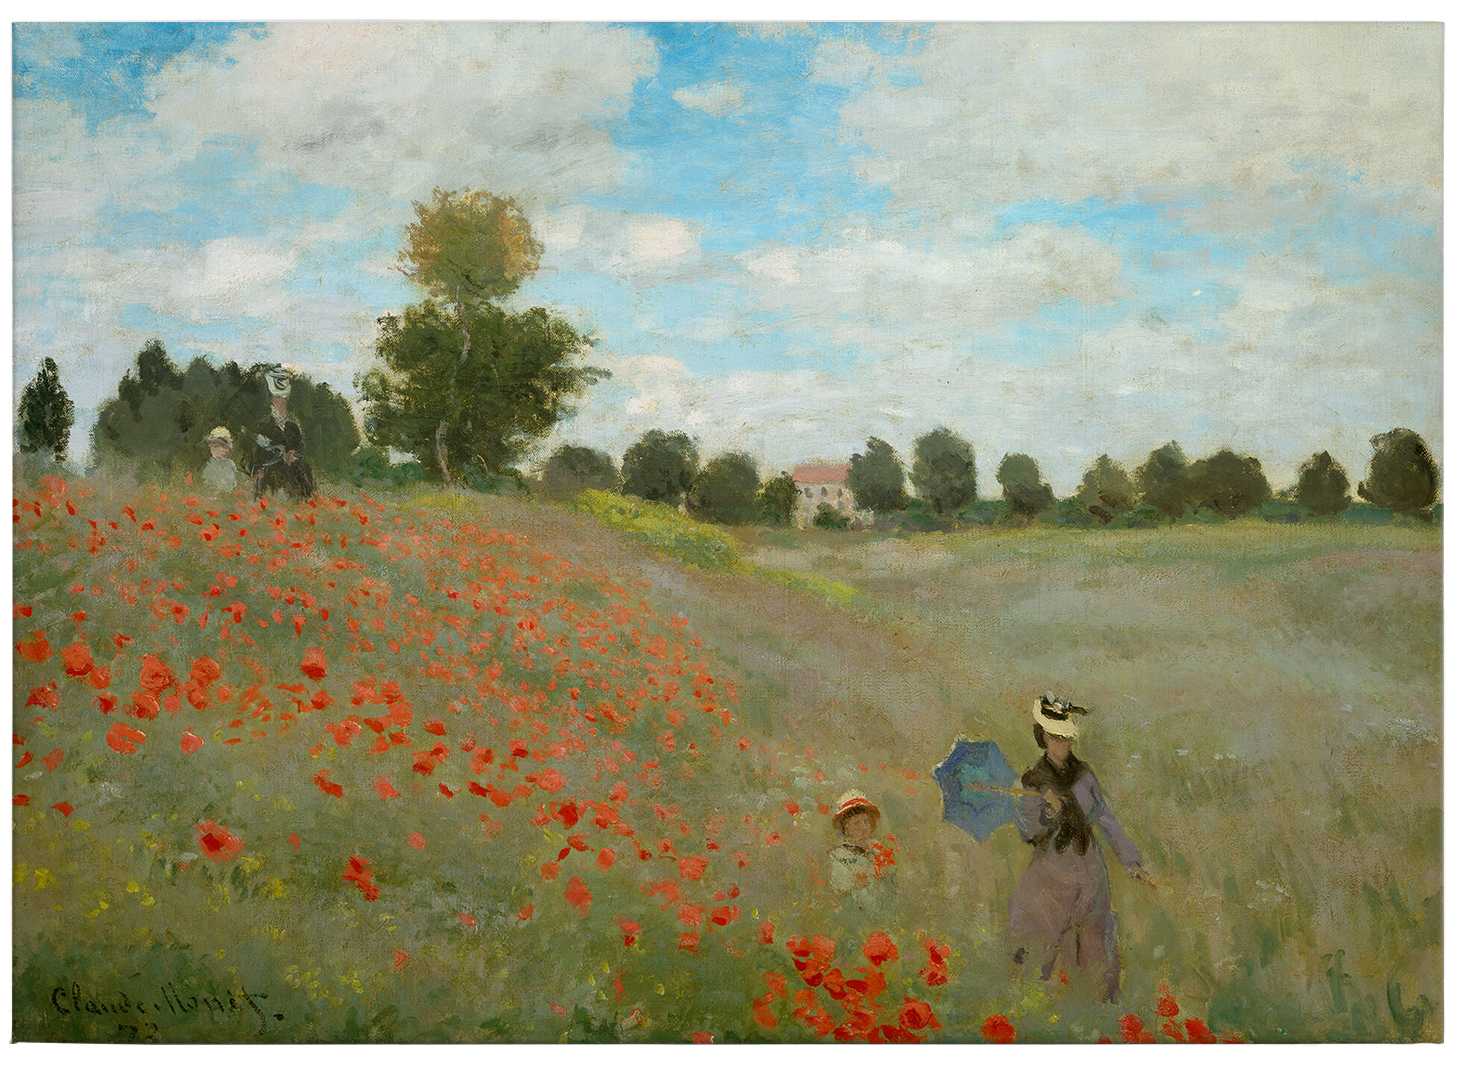             Monet Leinwandbild "Mohnfeld bei Argenteuil" – 0,70 m x 0,50 m
        